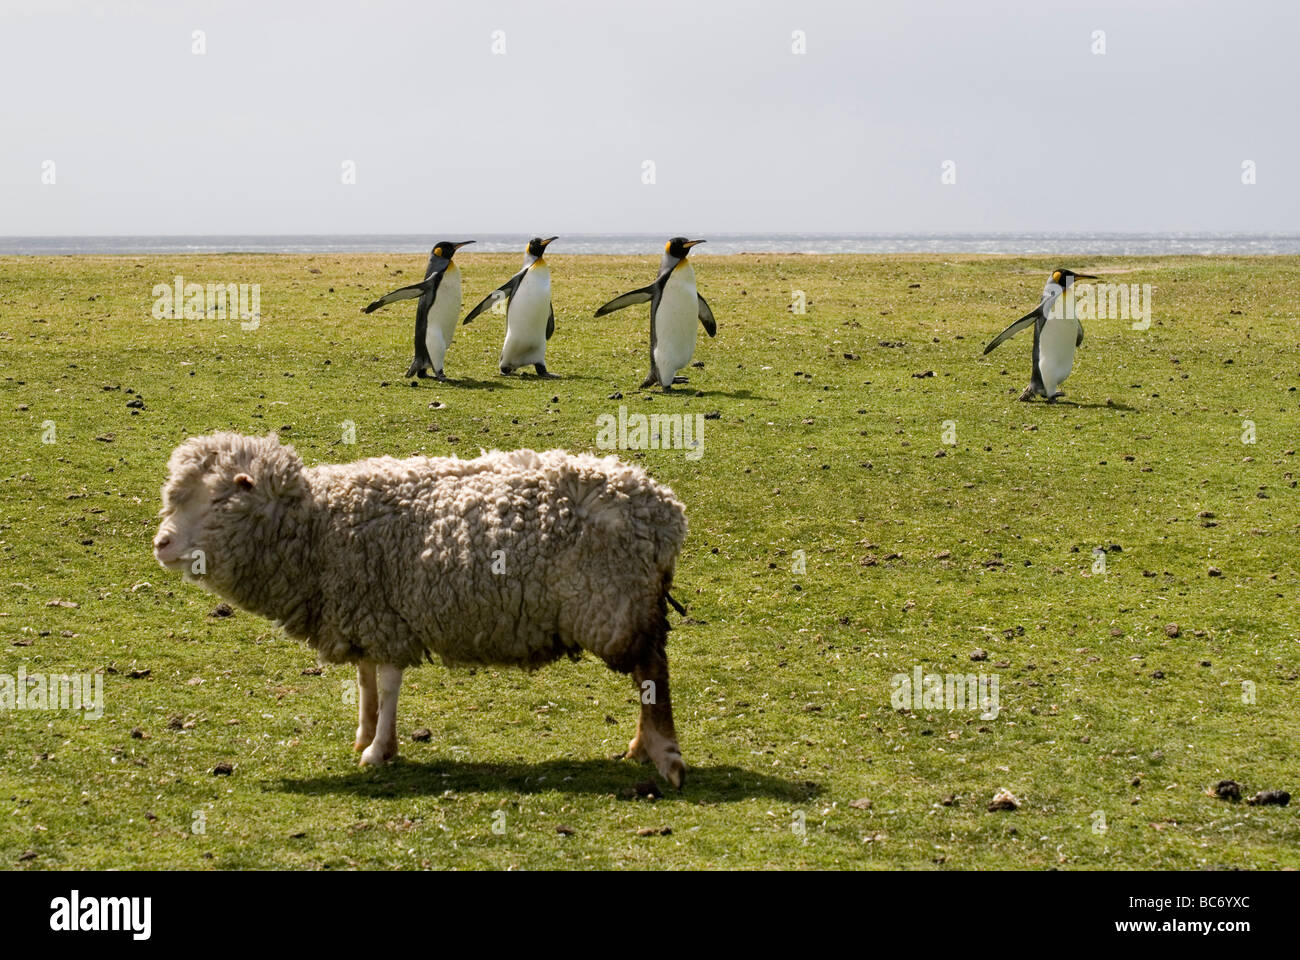 Pingüinos rey, Aptenodytes patagonicus,pasando por una oveja doméstica en algunas zonas agrícolas Foto de stock